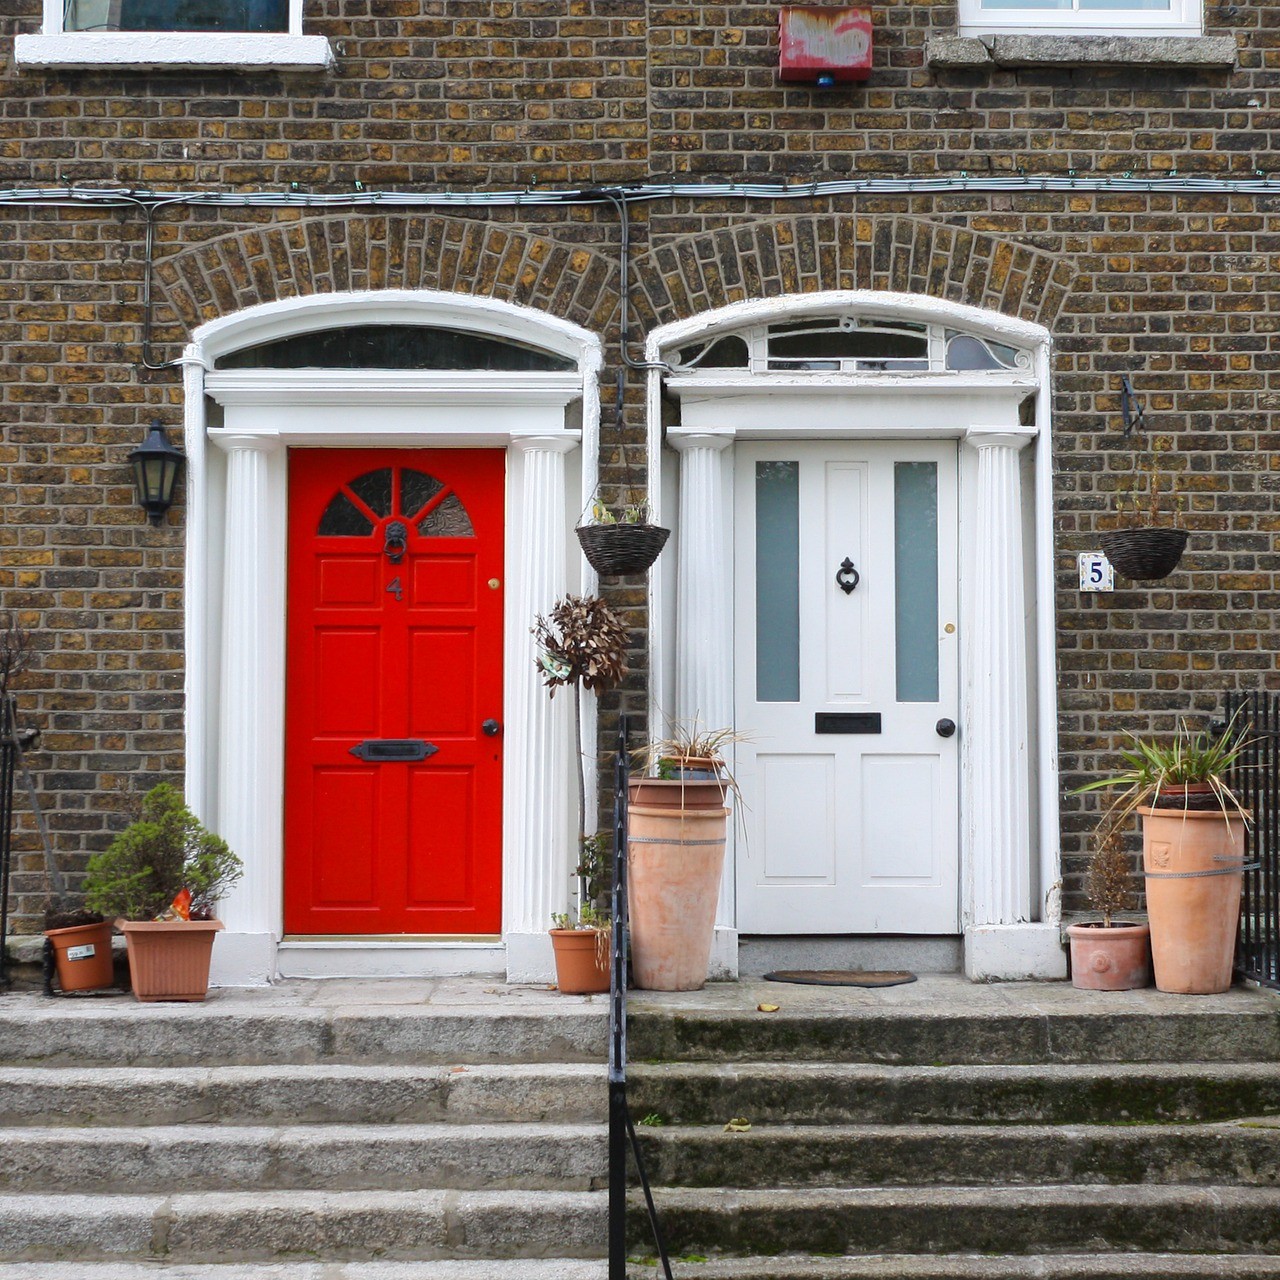 Tu acomodación en Irlanda, puede ser en casas tradicionales, con puertas coloridas como estas